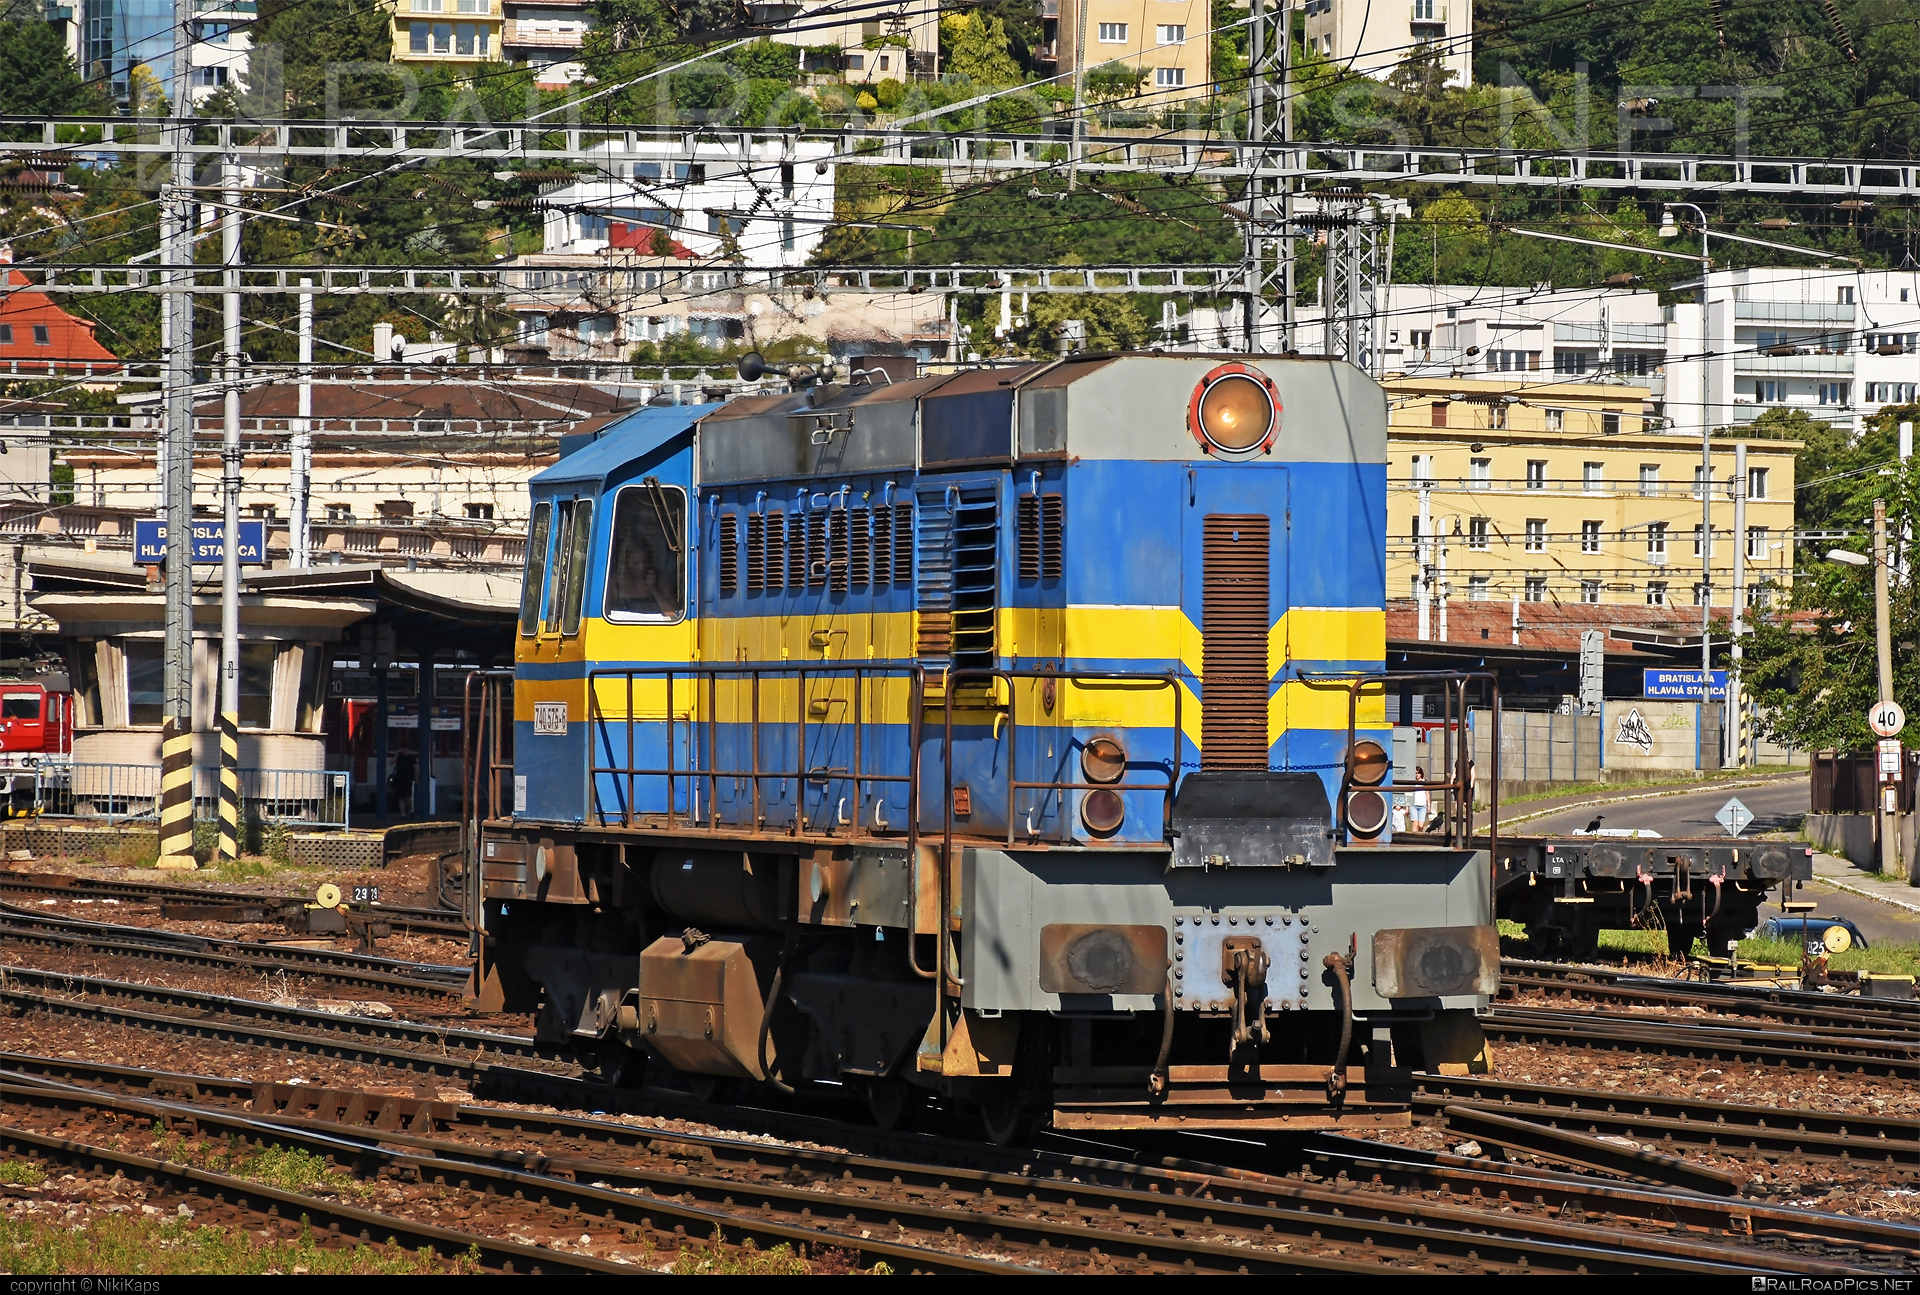 ČKD T 448.0 (740) - 740 575-6 operated by Železnice Peštál s.r.o. #ZeleznicePestal #ZeleznicePestalSro #ckd #ckd4480 #ckd740 #ckdt4480 #kocur